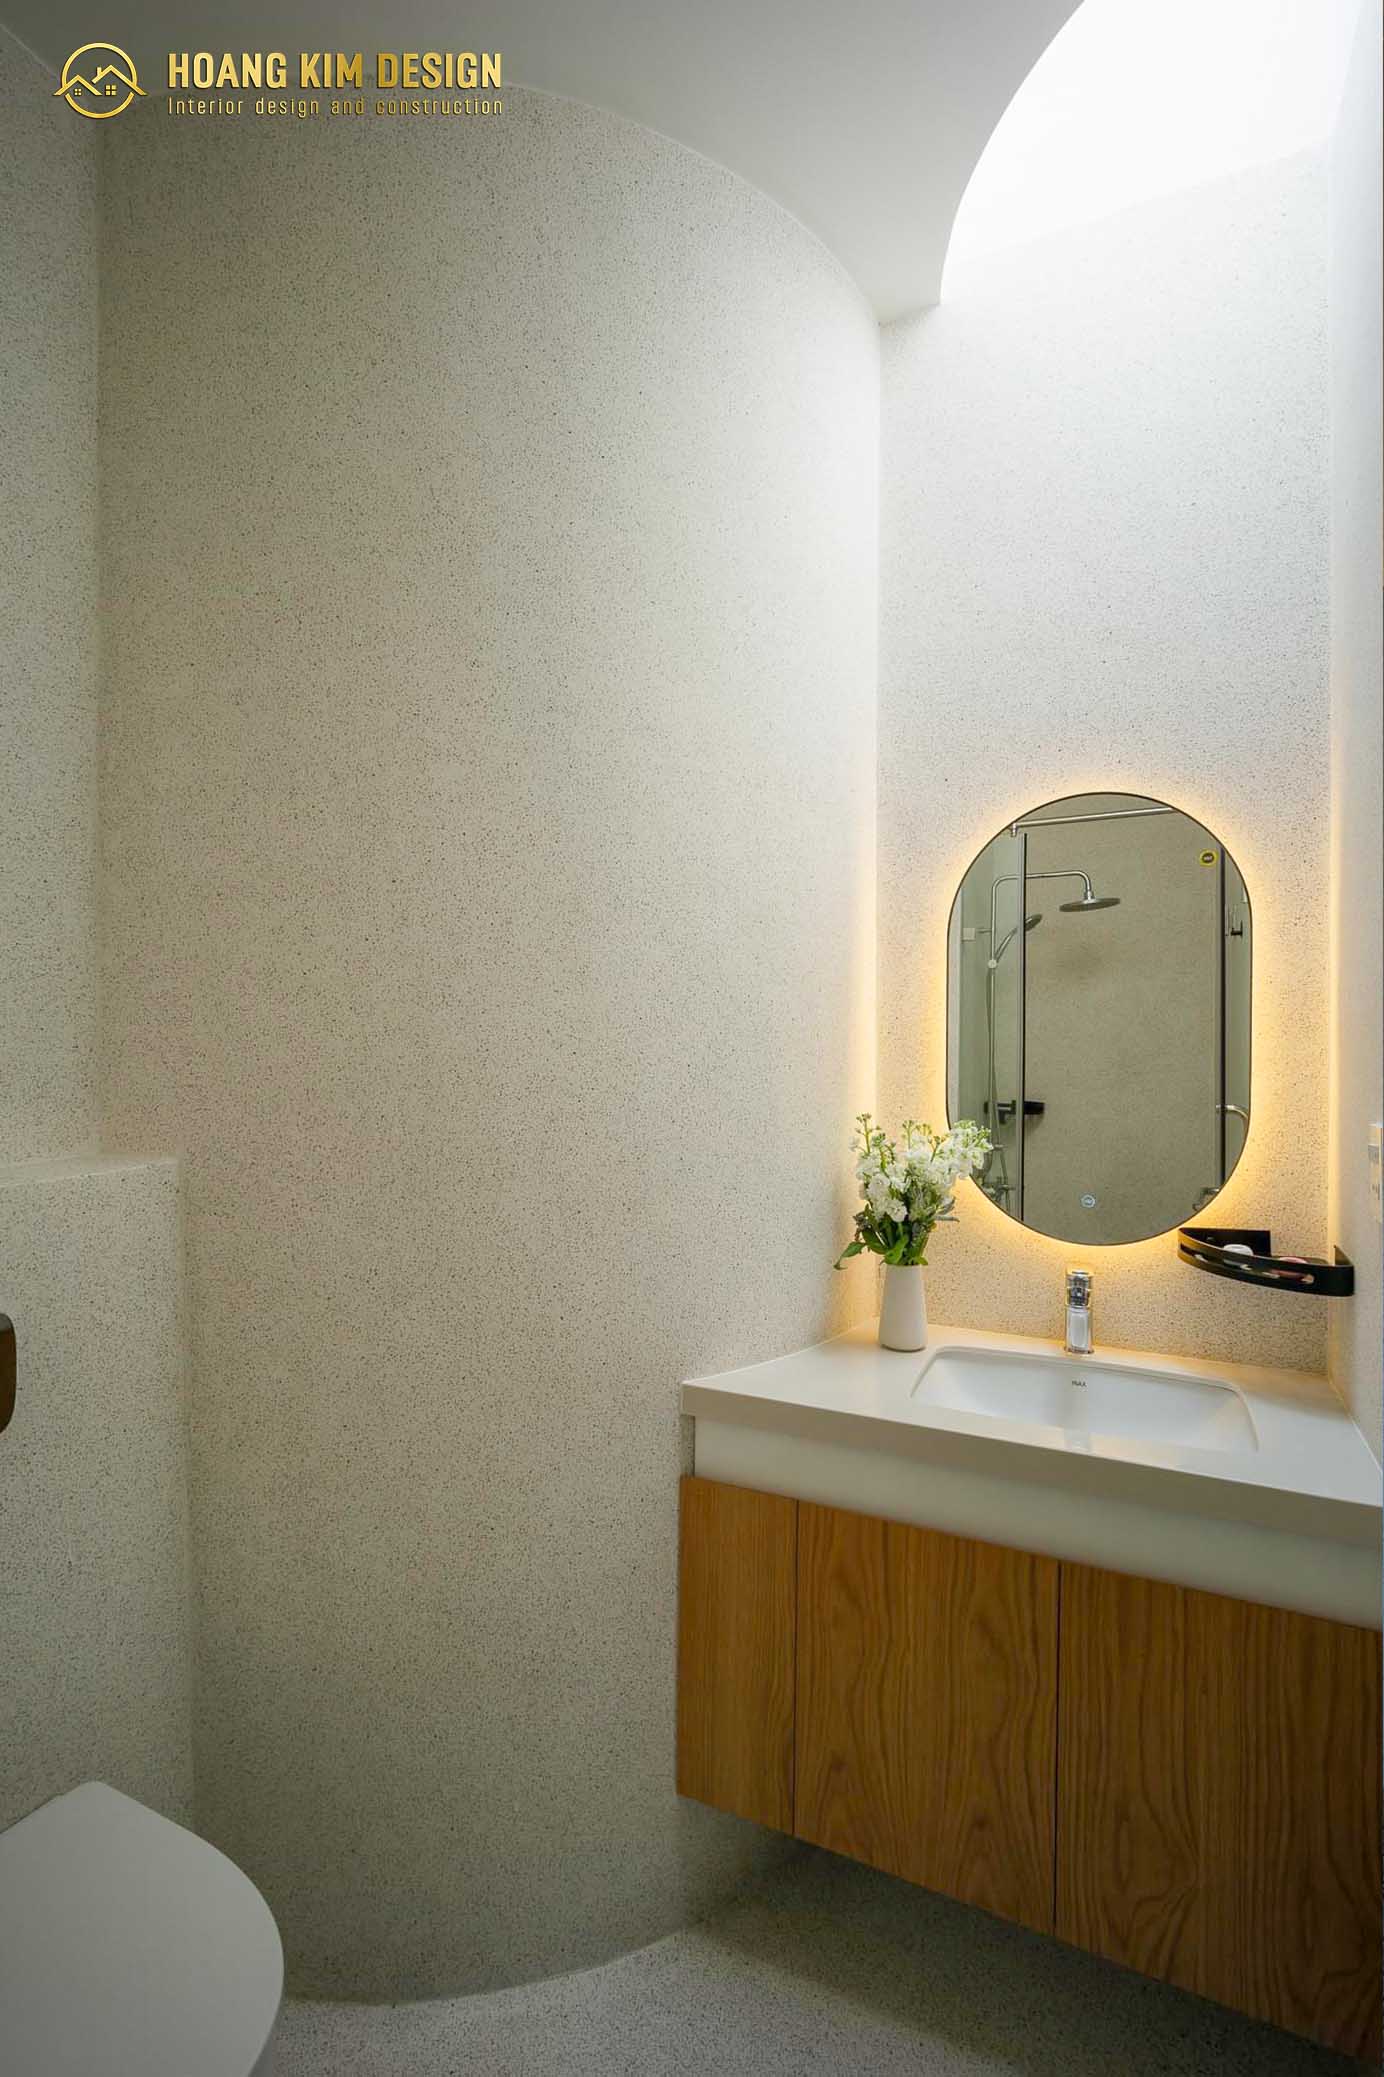 Nhà vệ sinh được thiết kế tinh tế với tông màu trắng hiện đại, sang trọng.